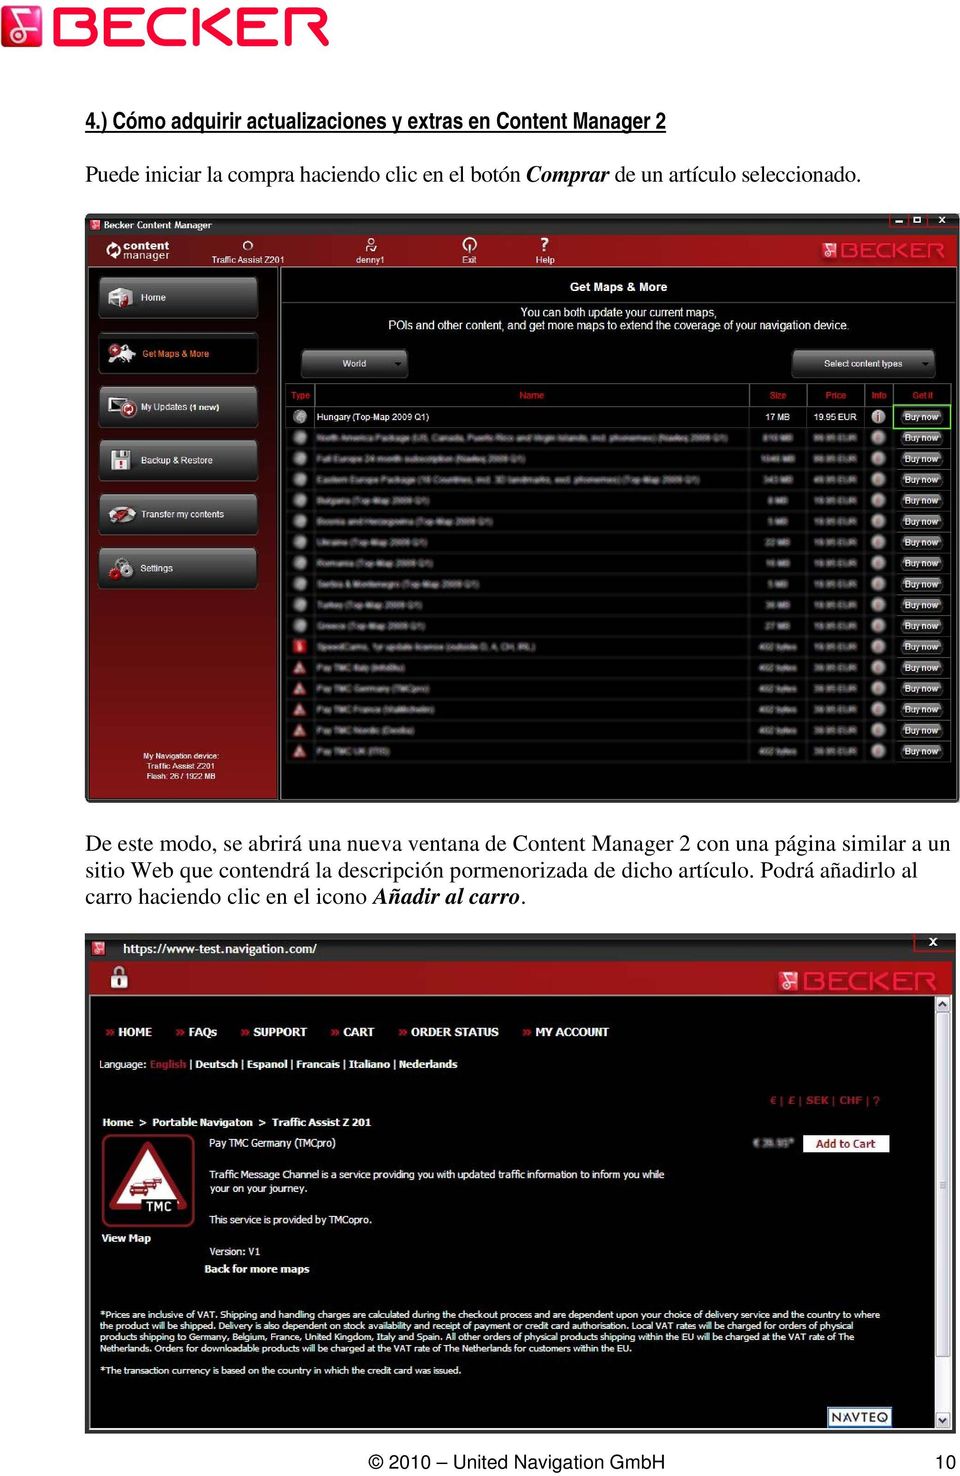 De este modo, se abrirá una nueva ventana de Content Manager 2 con una página similar a un sitio Web